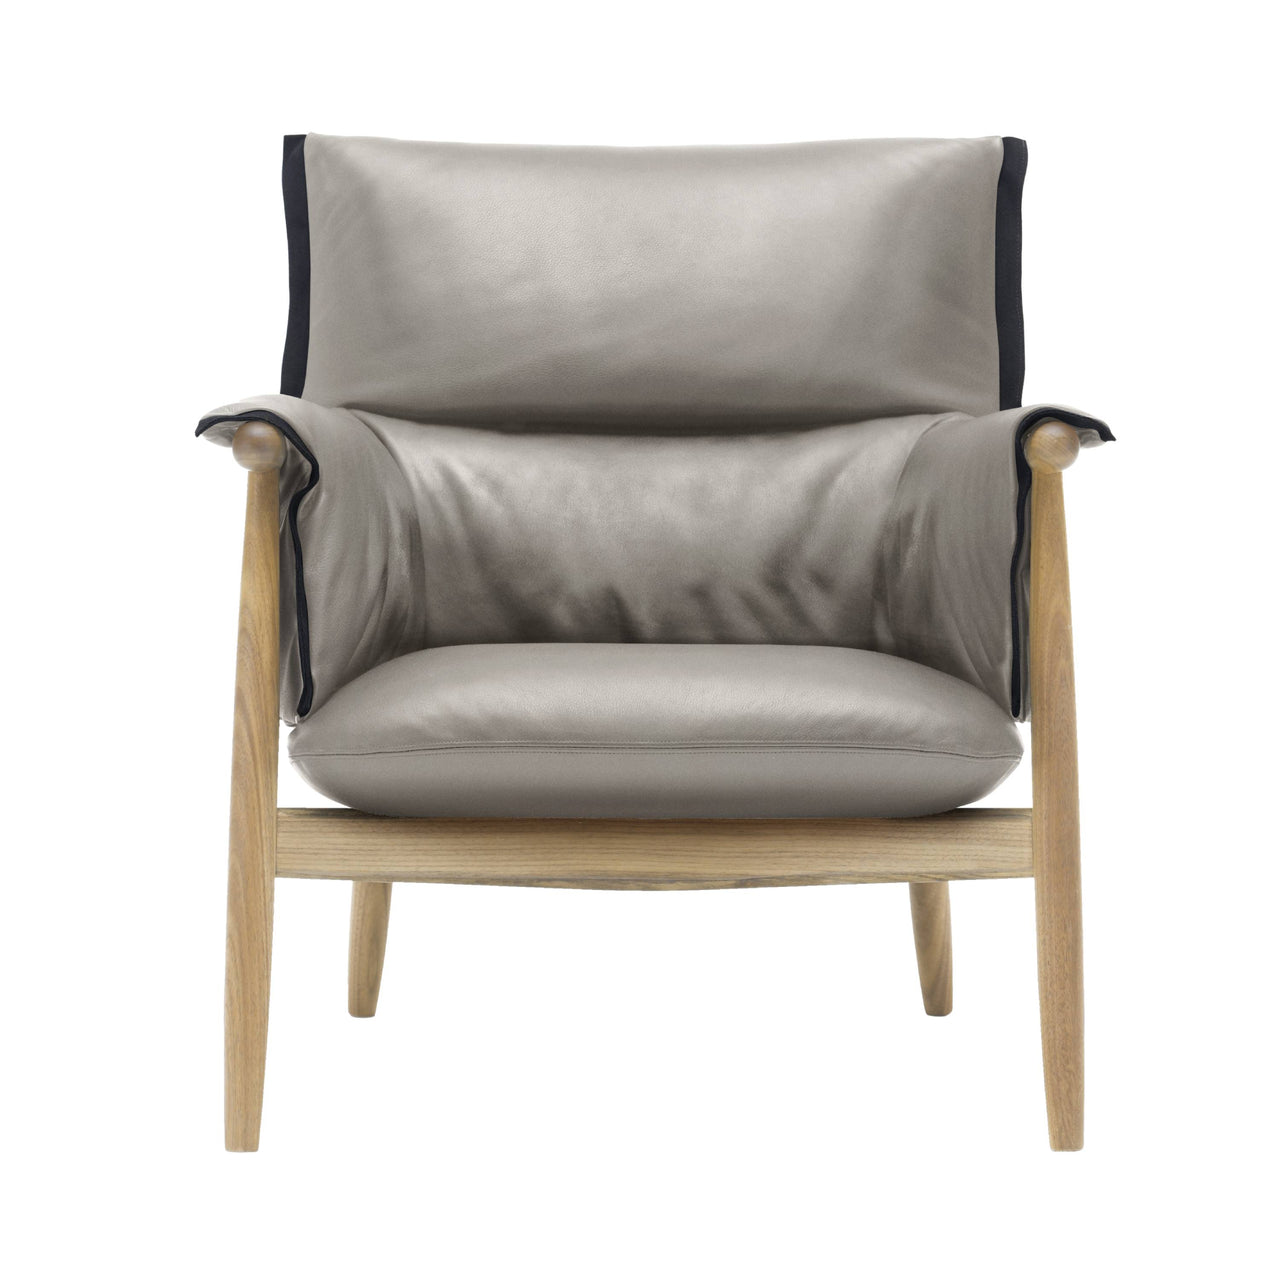 E015 Embrace Lounge Chair: Black Edging Strip + Soaped Oak